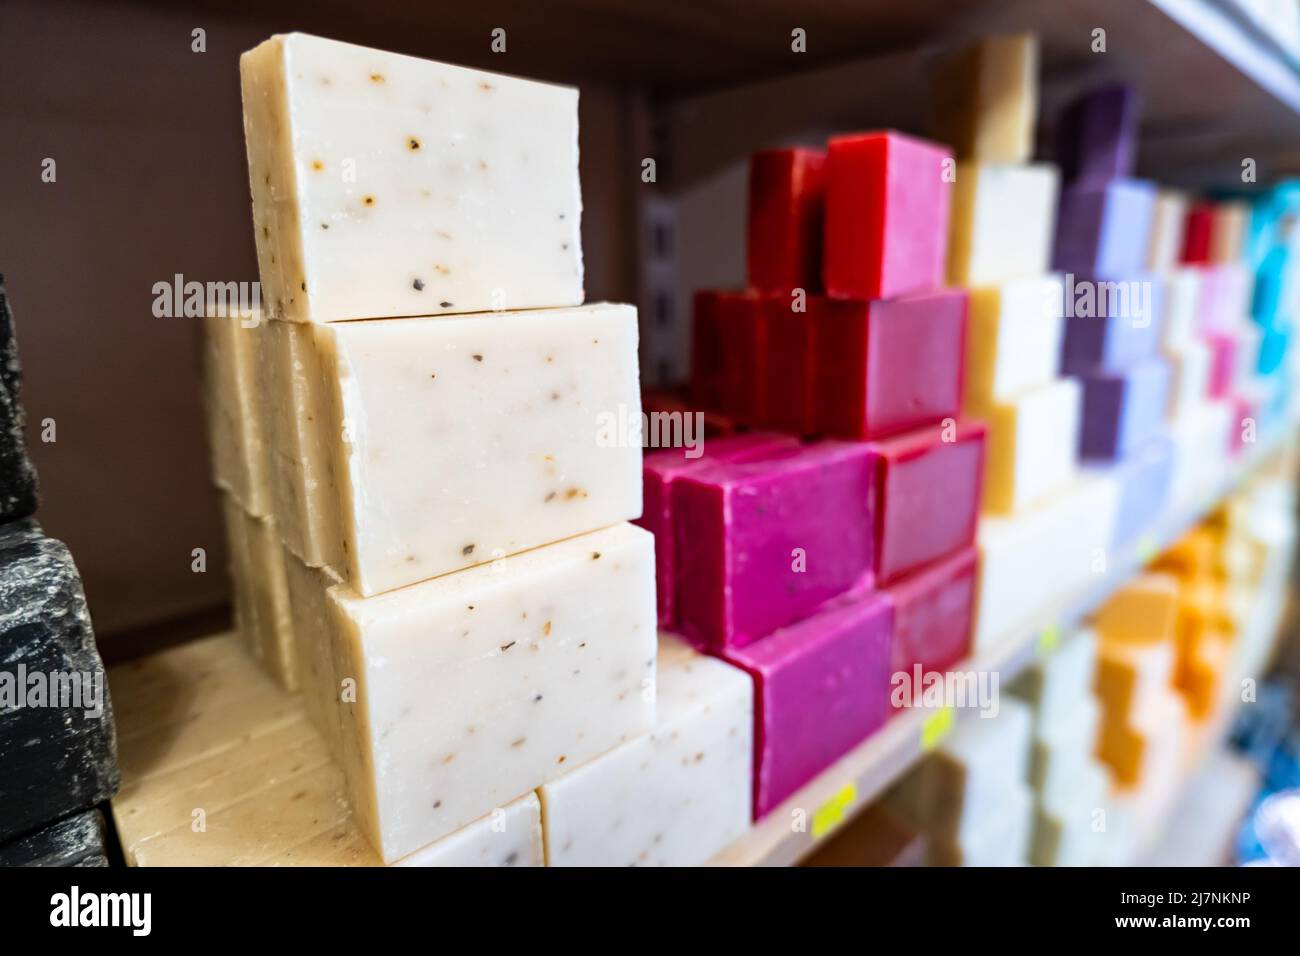 Sapone organico tradizionale (sapone bitim) a Mardin, Turchia. Le saponette biologiche artigianali multicolore sono famose a Mardin e popolari souvenir Foto Stock